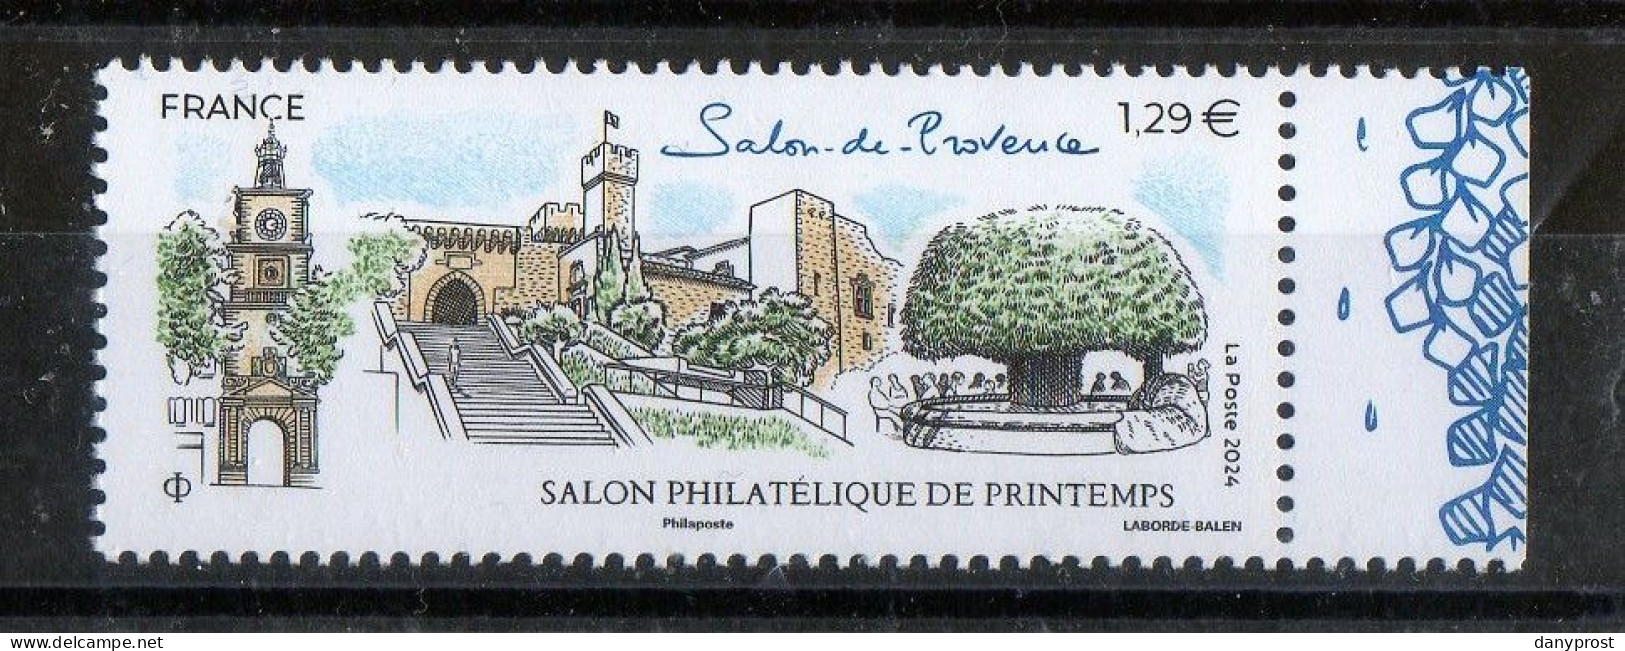 FR 2024 -" SALON PHILATELIQUE DE PRINTEMPS-Salon De Provence  " 1 T  LV 20g  à 1.29 € - 1 Marge Droit Illustrée - Neuf** - Ungebraucht